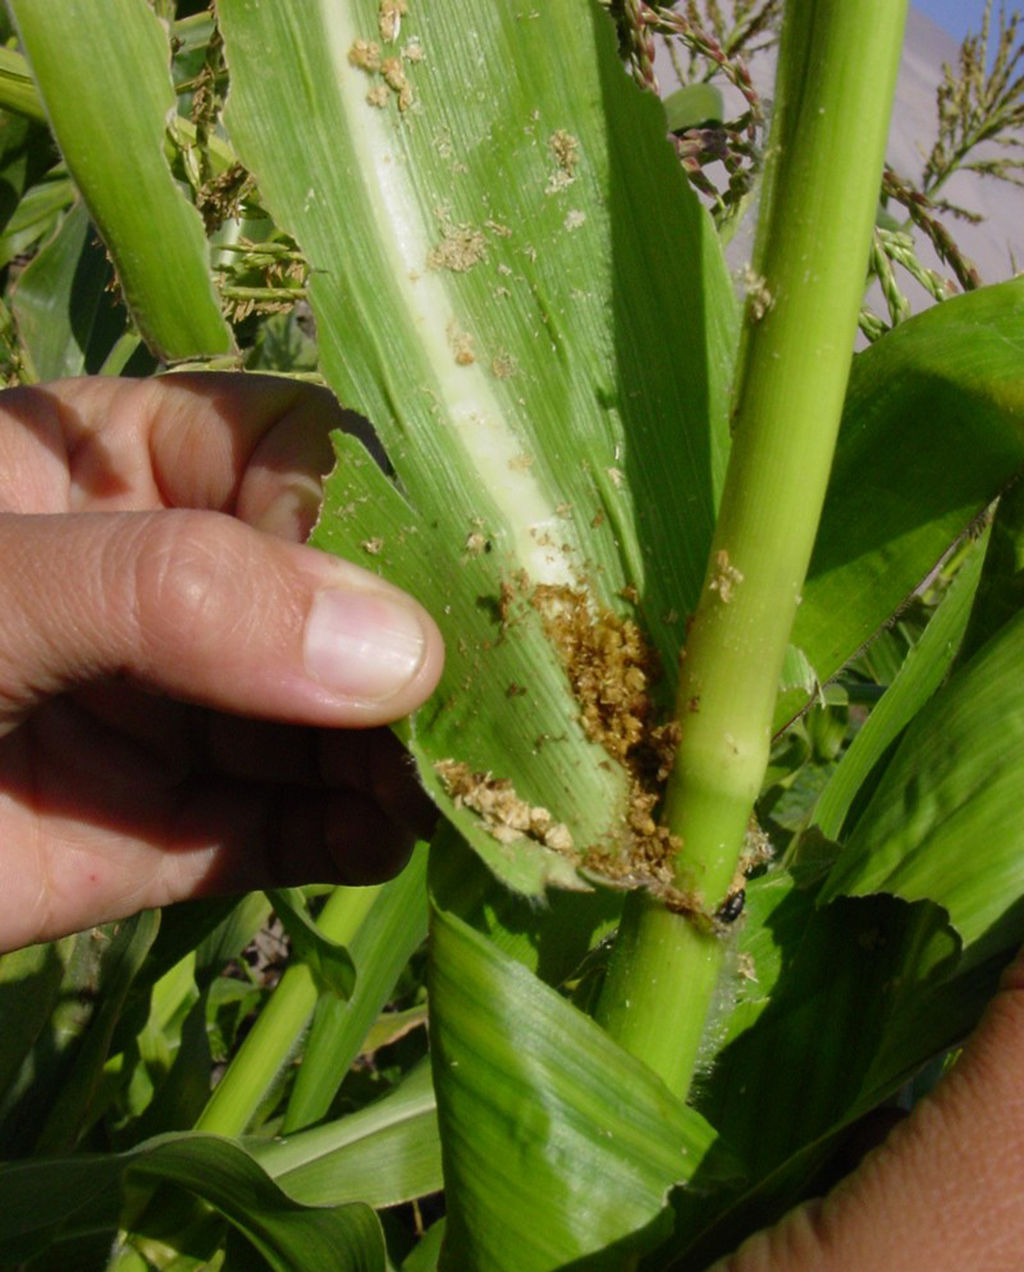 Plagas. El chapulín y el gusano cogollero están afectando ya las siembras de frijol y maíz.